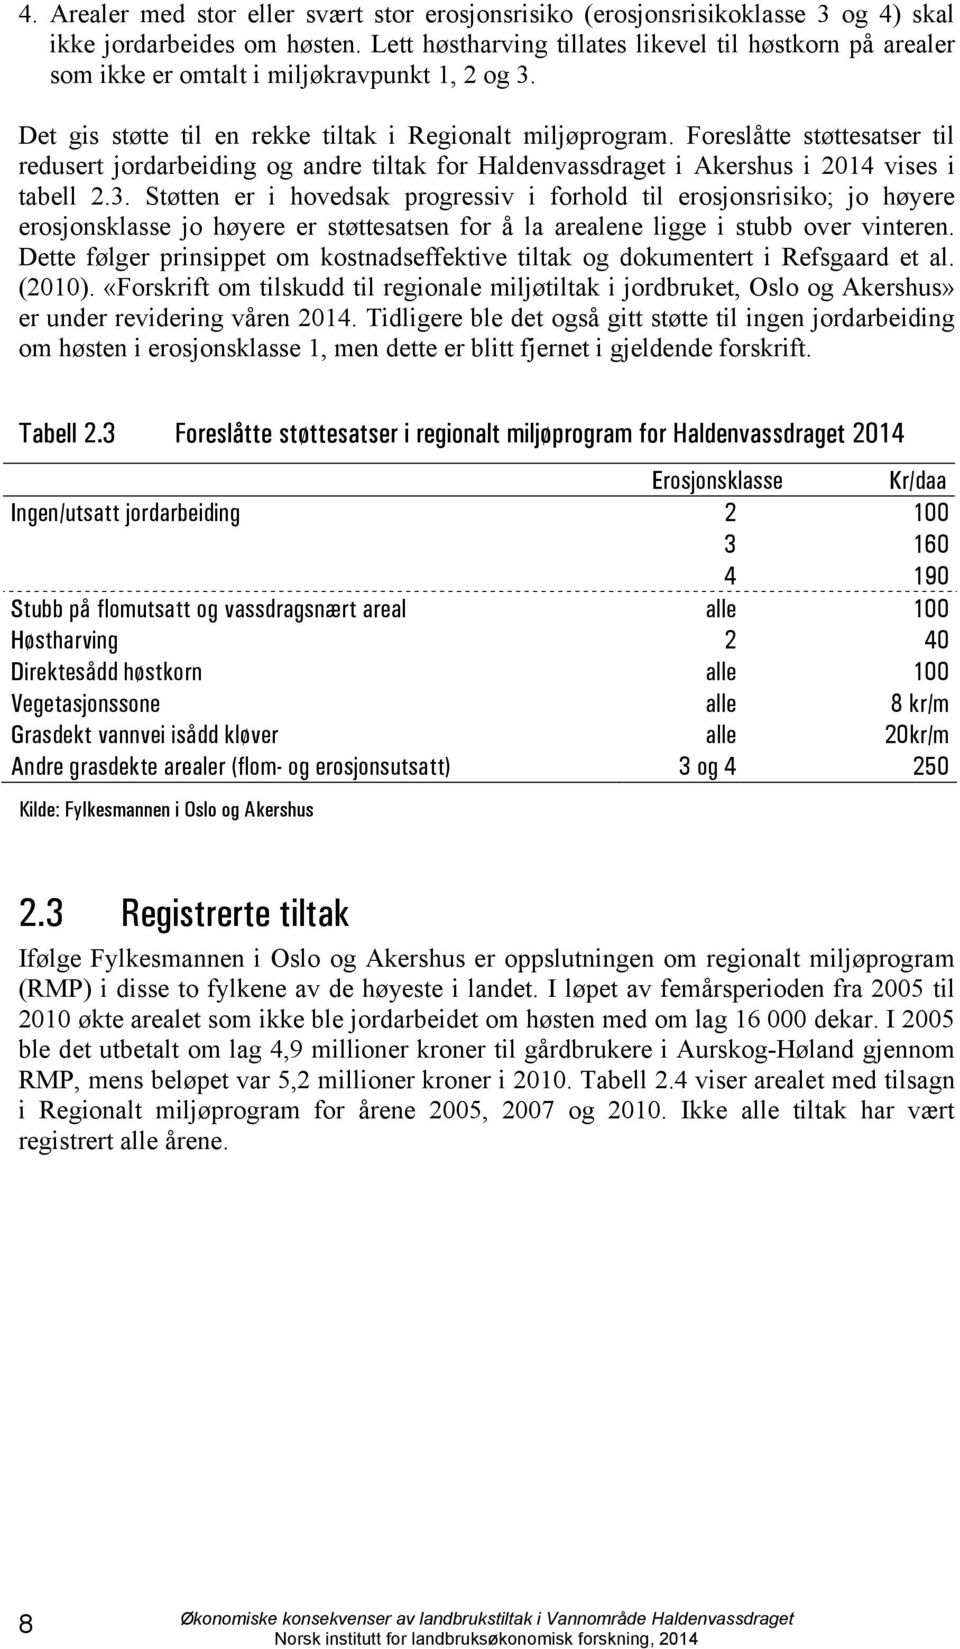 Foreslåtte støttesatser til redusert jordarbeiding og andre tiltak for Haldenvassdraget i Akershus i 2014 vises i tabell 2.3.